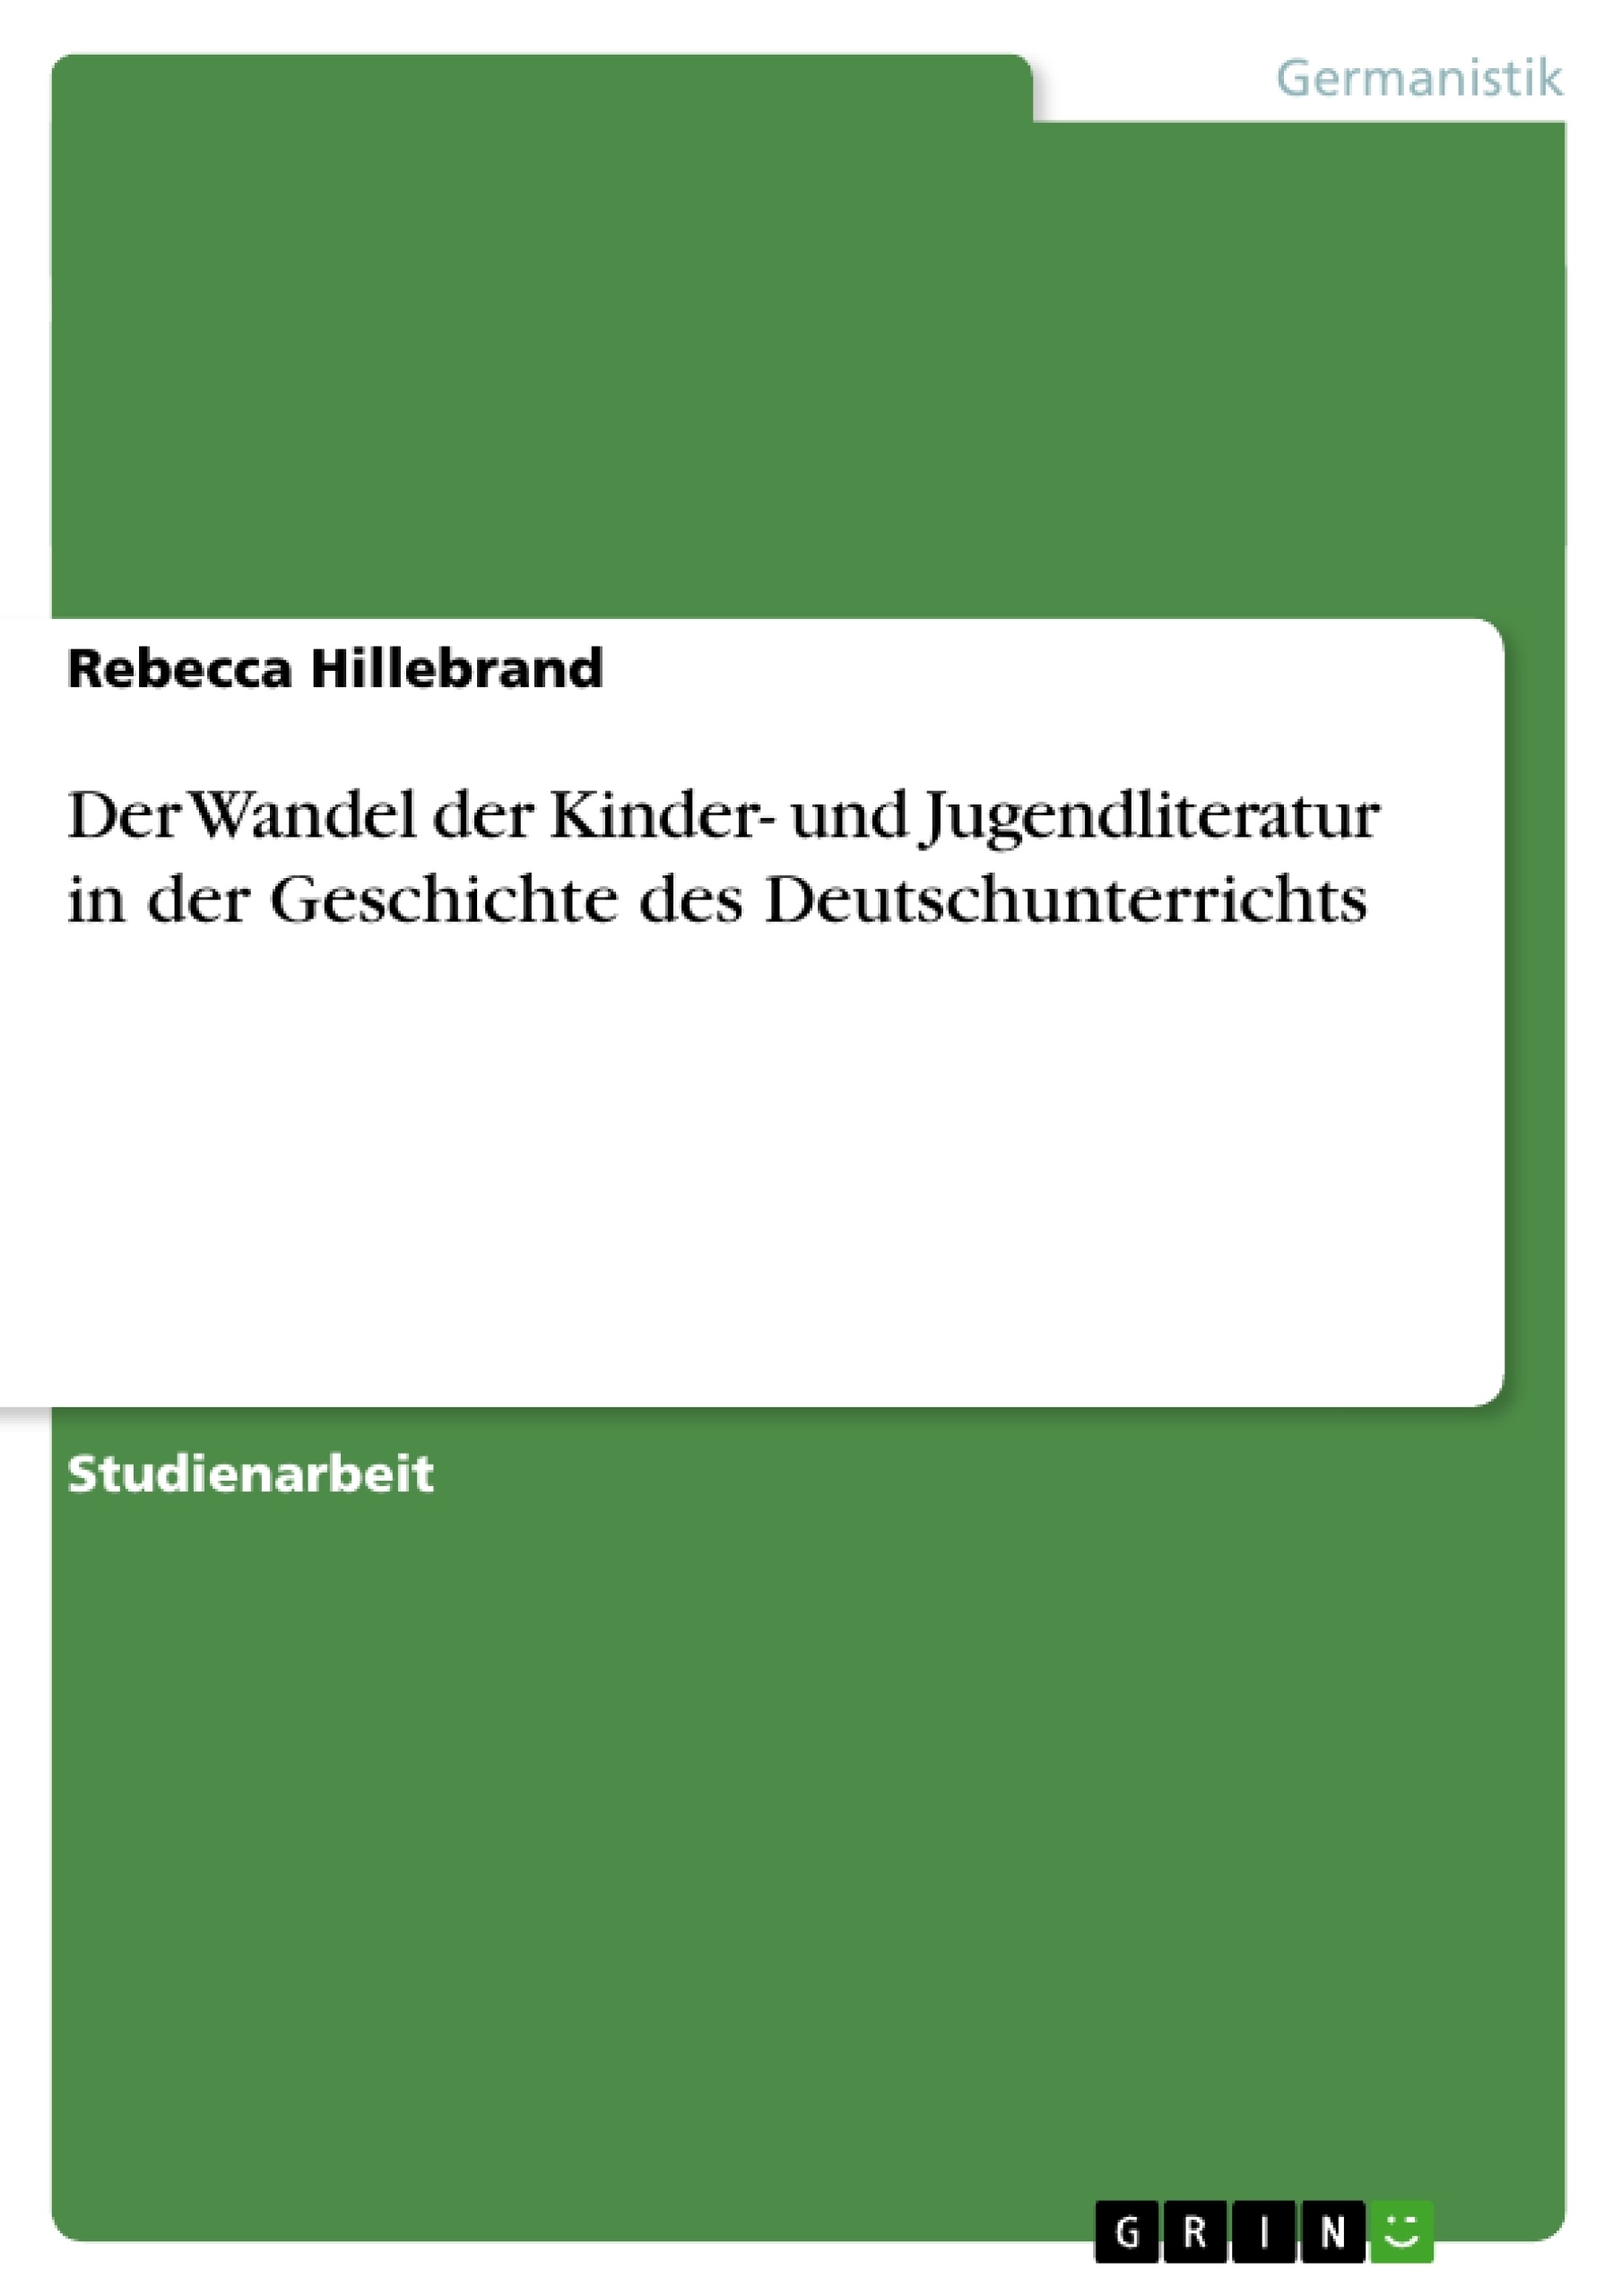 Title: Der Wandel der Kinder- und Jugendliteratur in der Geschichte des Deutschunterrichts